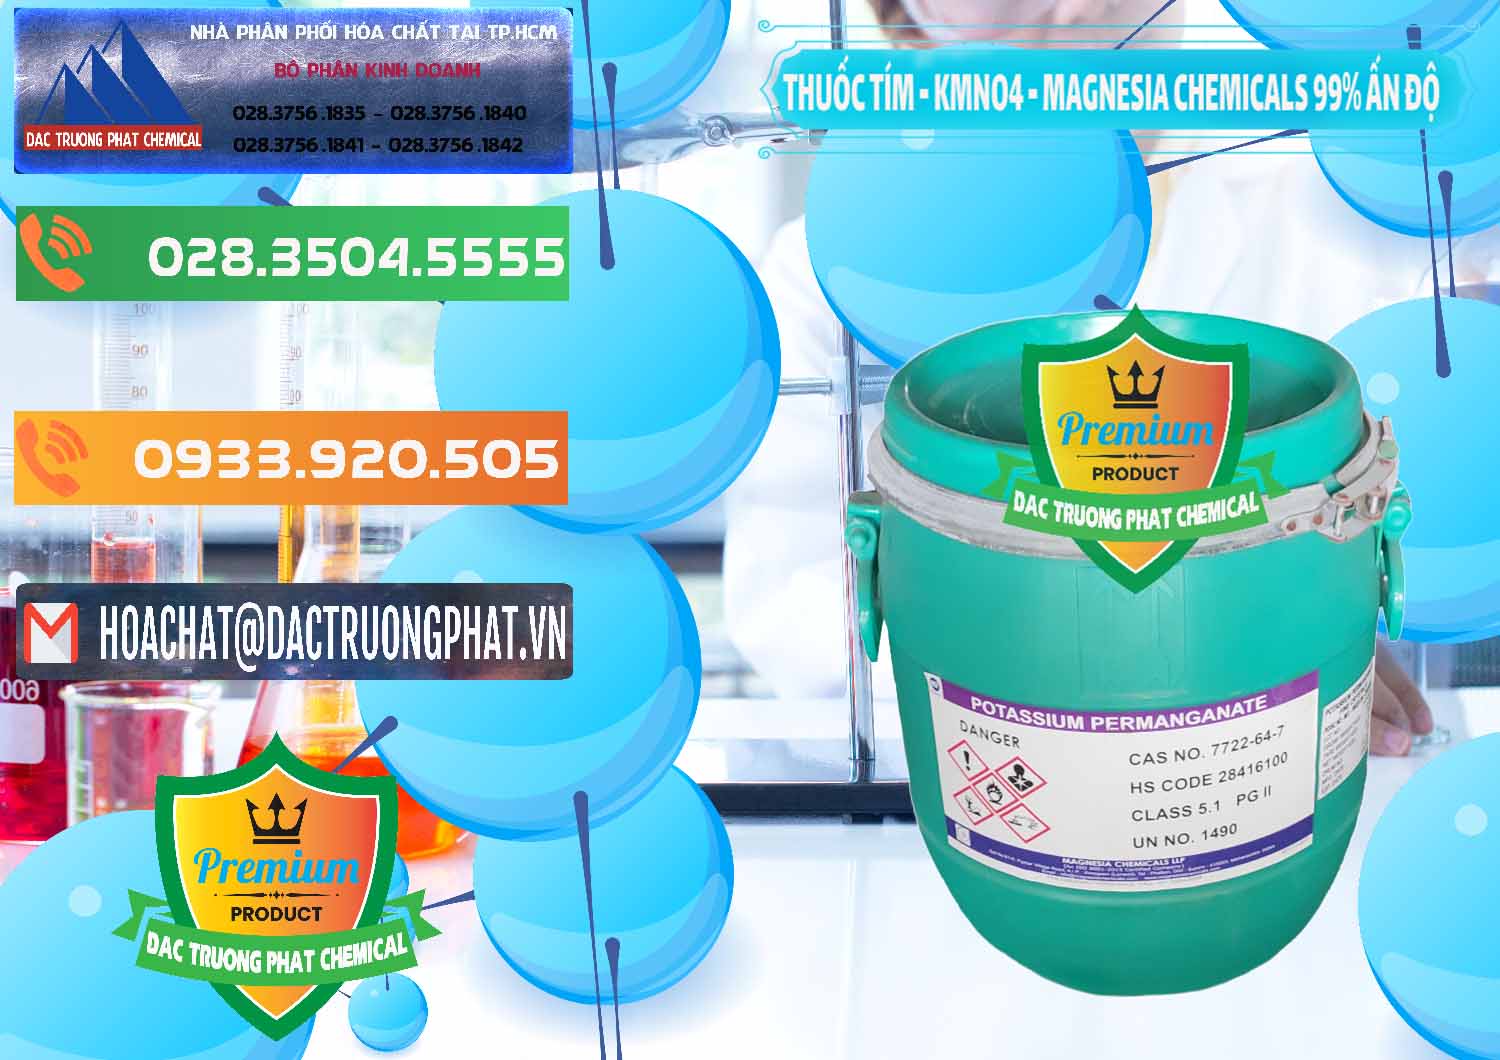 Nơi chuyên phân phối & bán Thuốc Tím - KMNO4 Magnesia Chemicals 99% Ấn Độ India - 0251 - Cty chuyên kinh doanh _ phân phối hóa chất tại TP.HCM - hoachatxulynuoc.com.vn